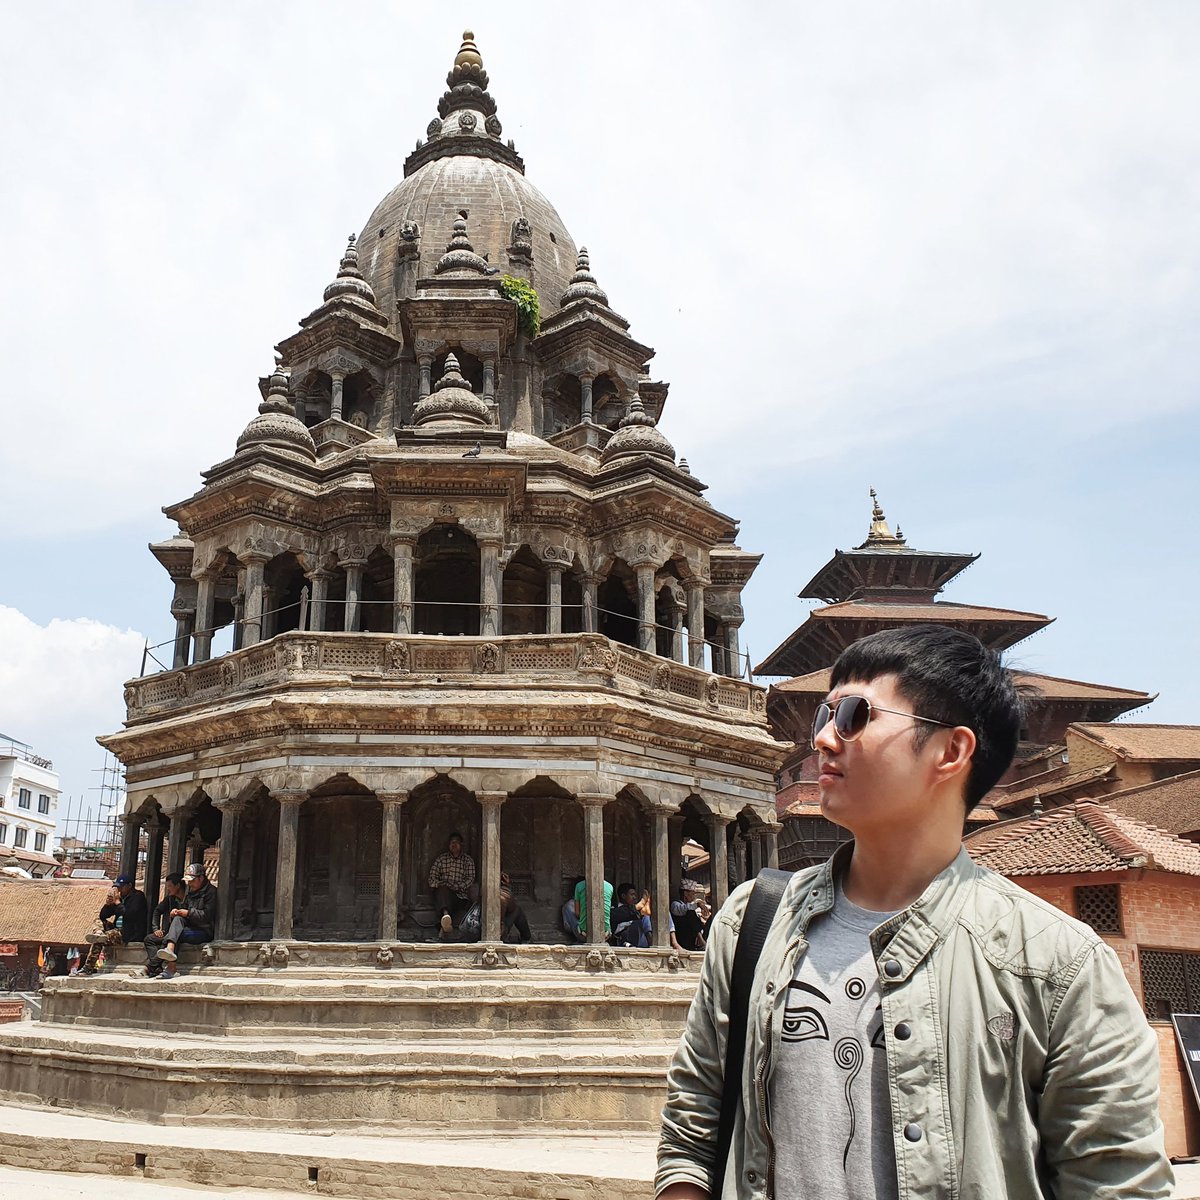 เหมือนจะเป็นไม้ทั้งอันเลย สวย 😍 #SomainNepal #DurbarSquare #Nepal